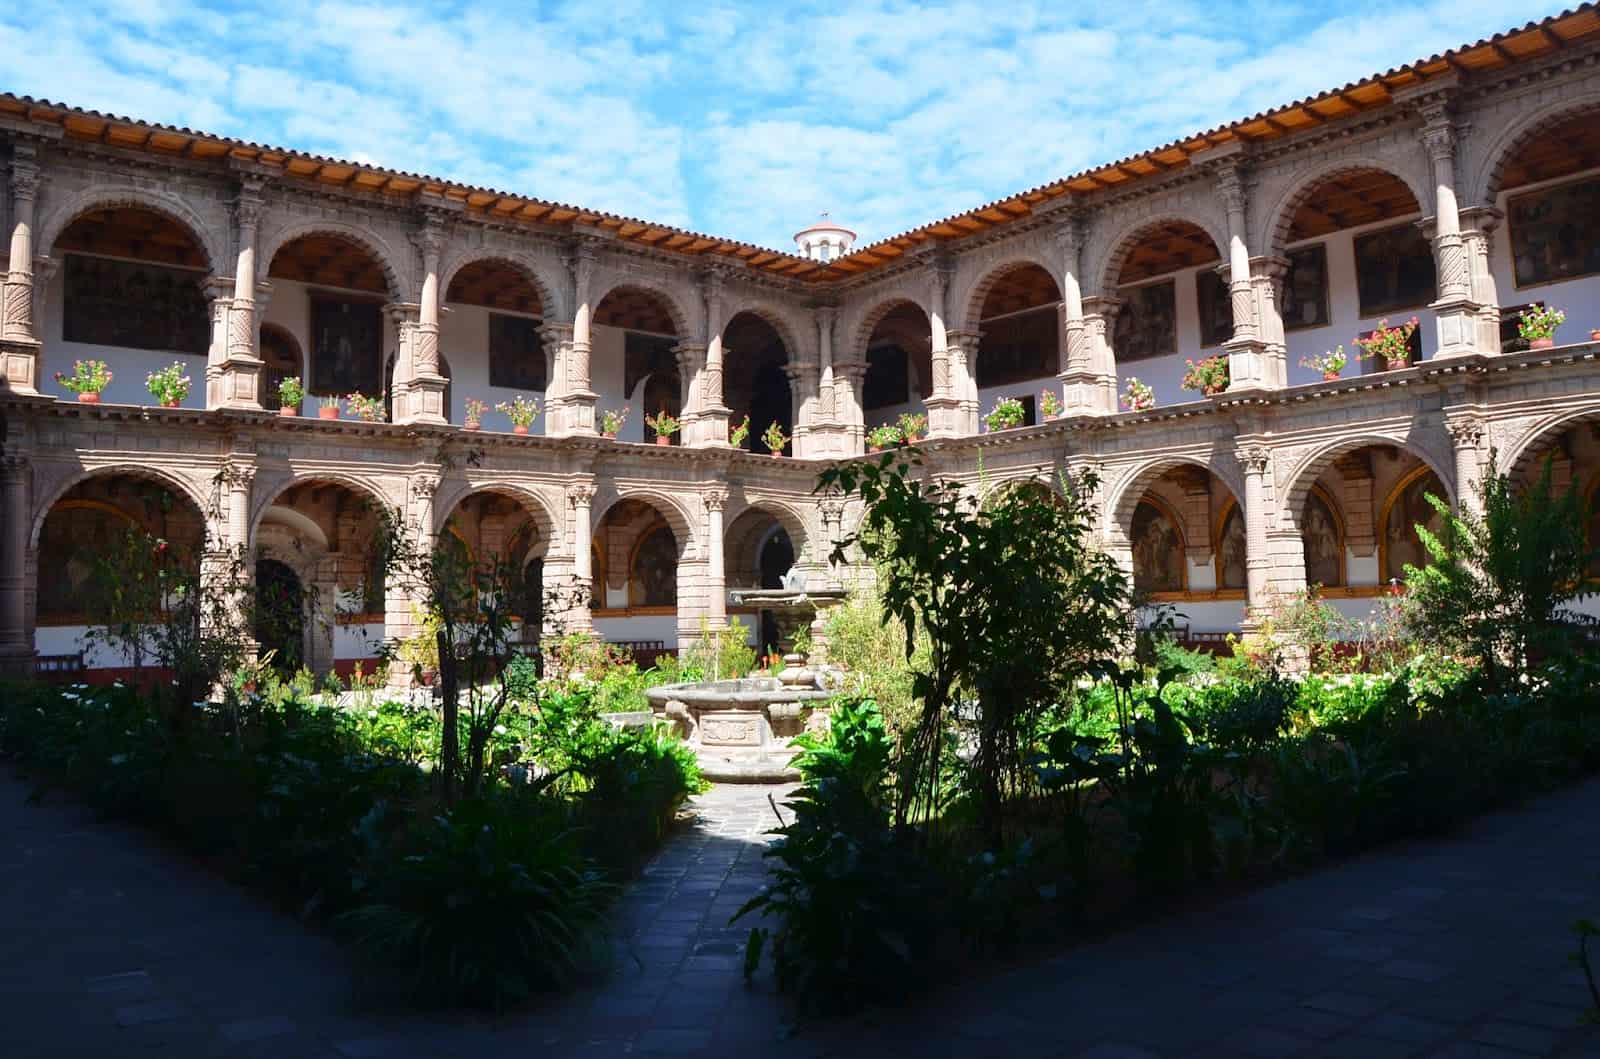 Courtyard of the Church of La Merced in Cusco, Peru